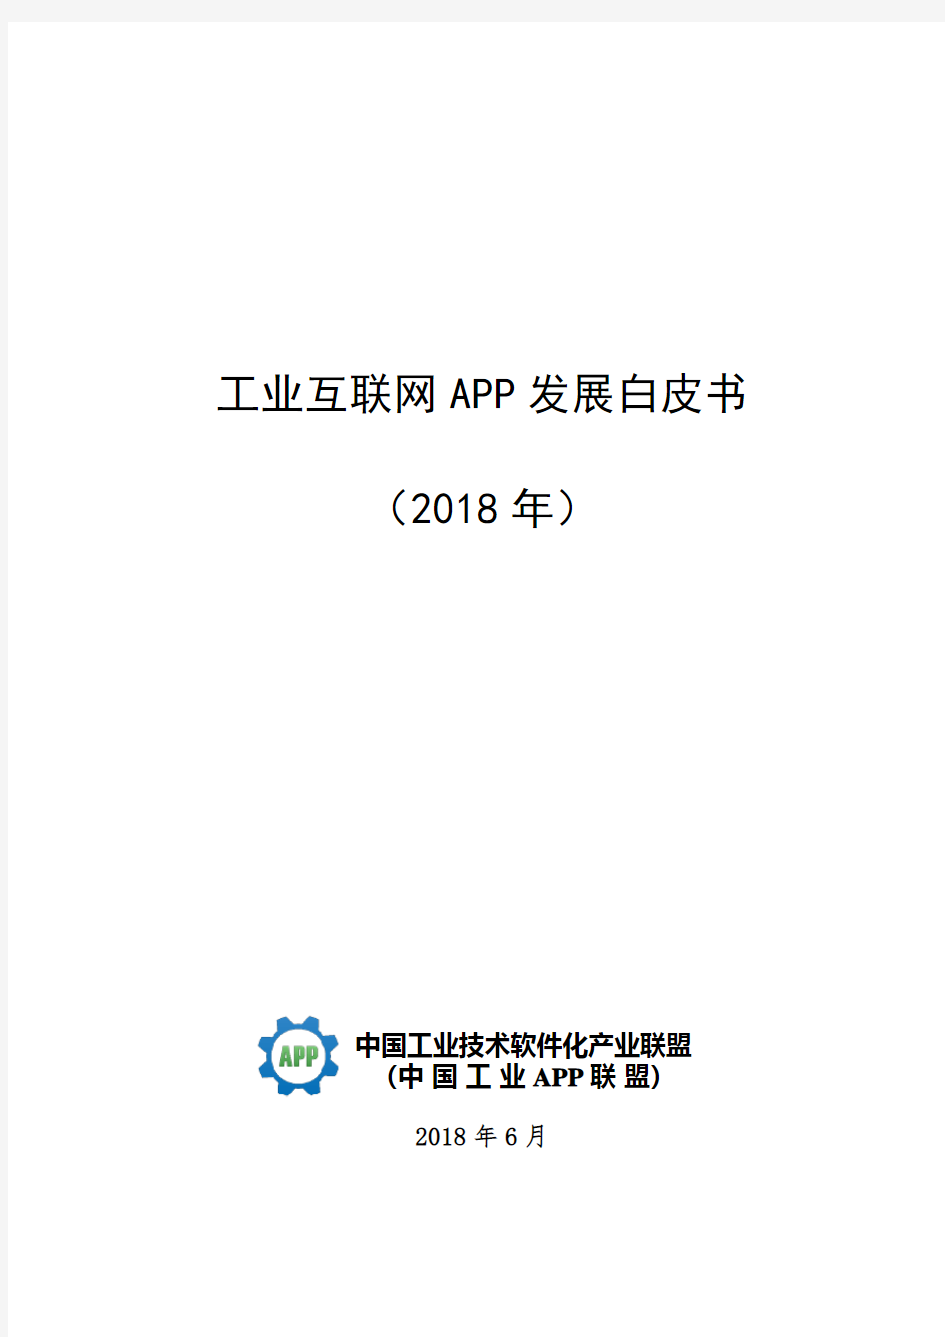 中国工业技术软件化联盟：工业互联网APP发展白皮书